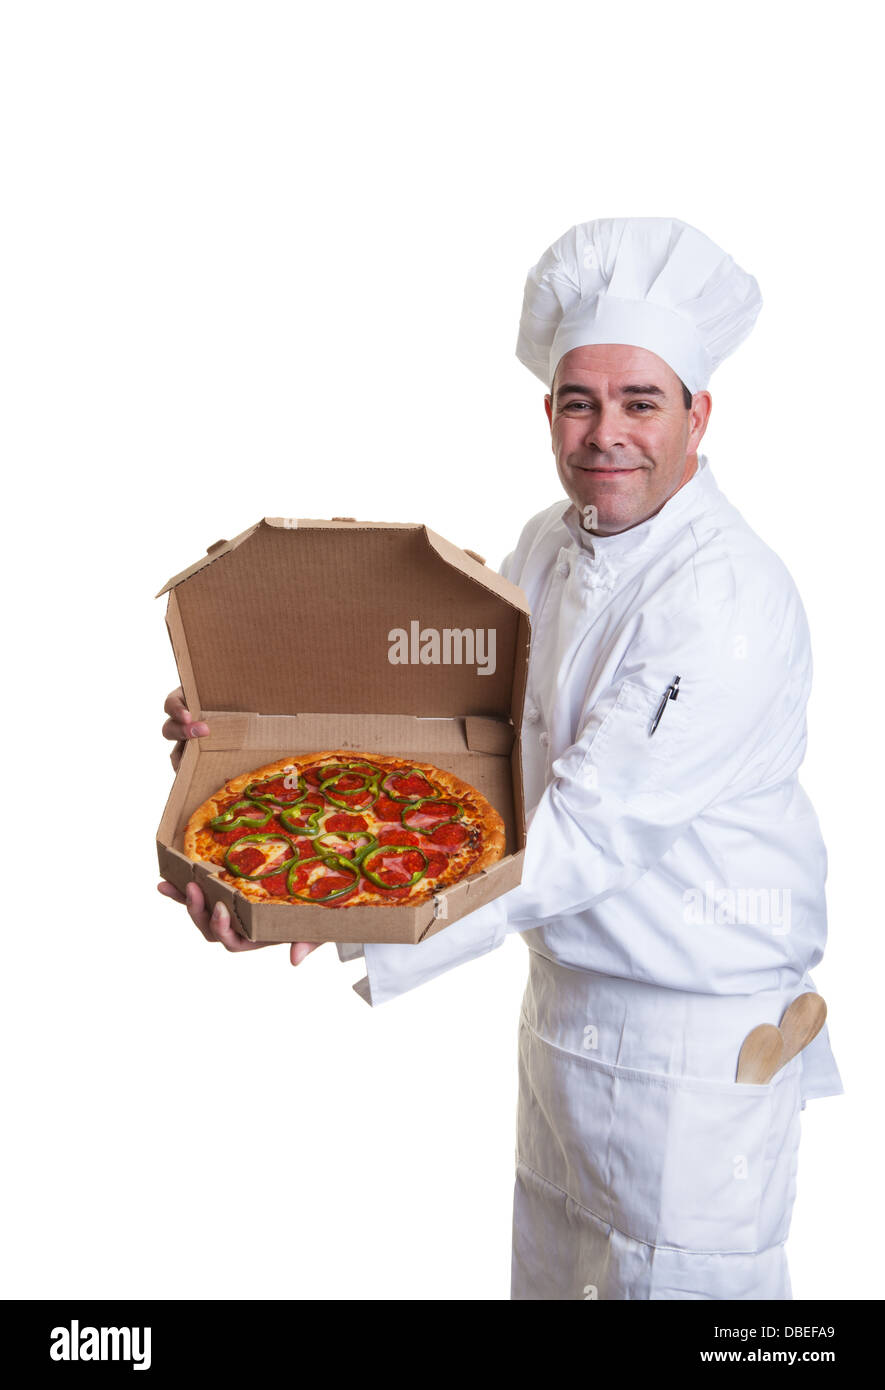 Ein Lächeln auf den Lippen Koch hält eine Pizza in einer Box Stockfoto